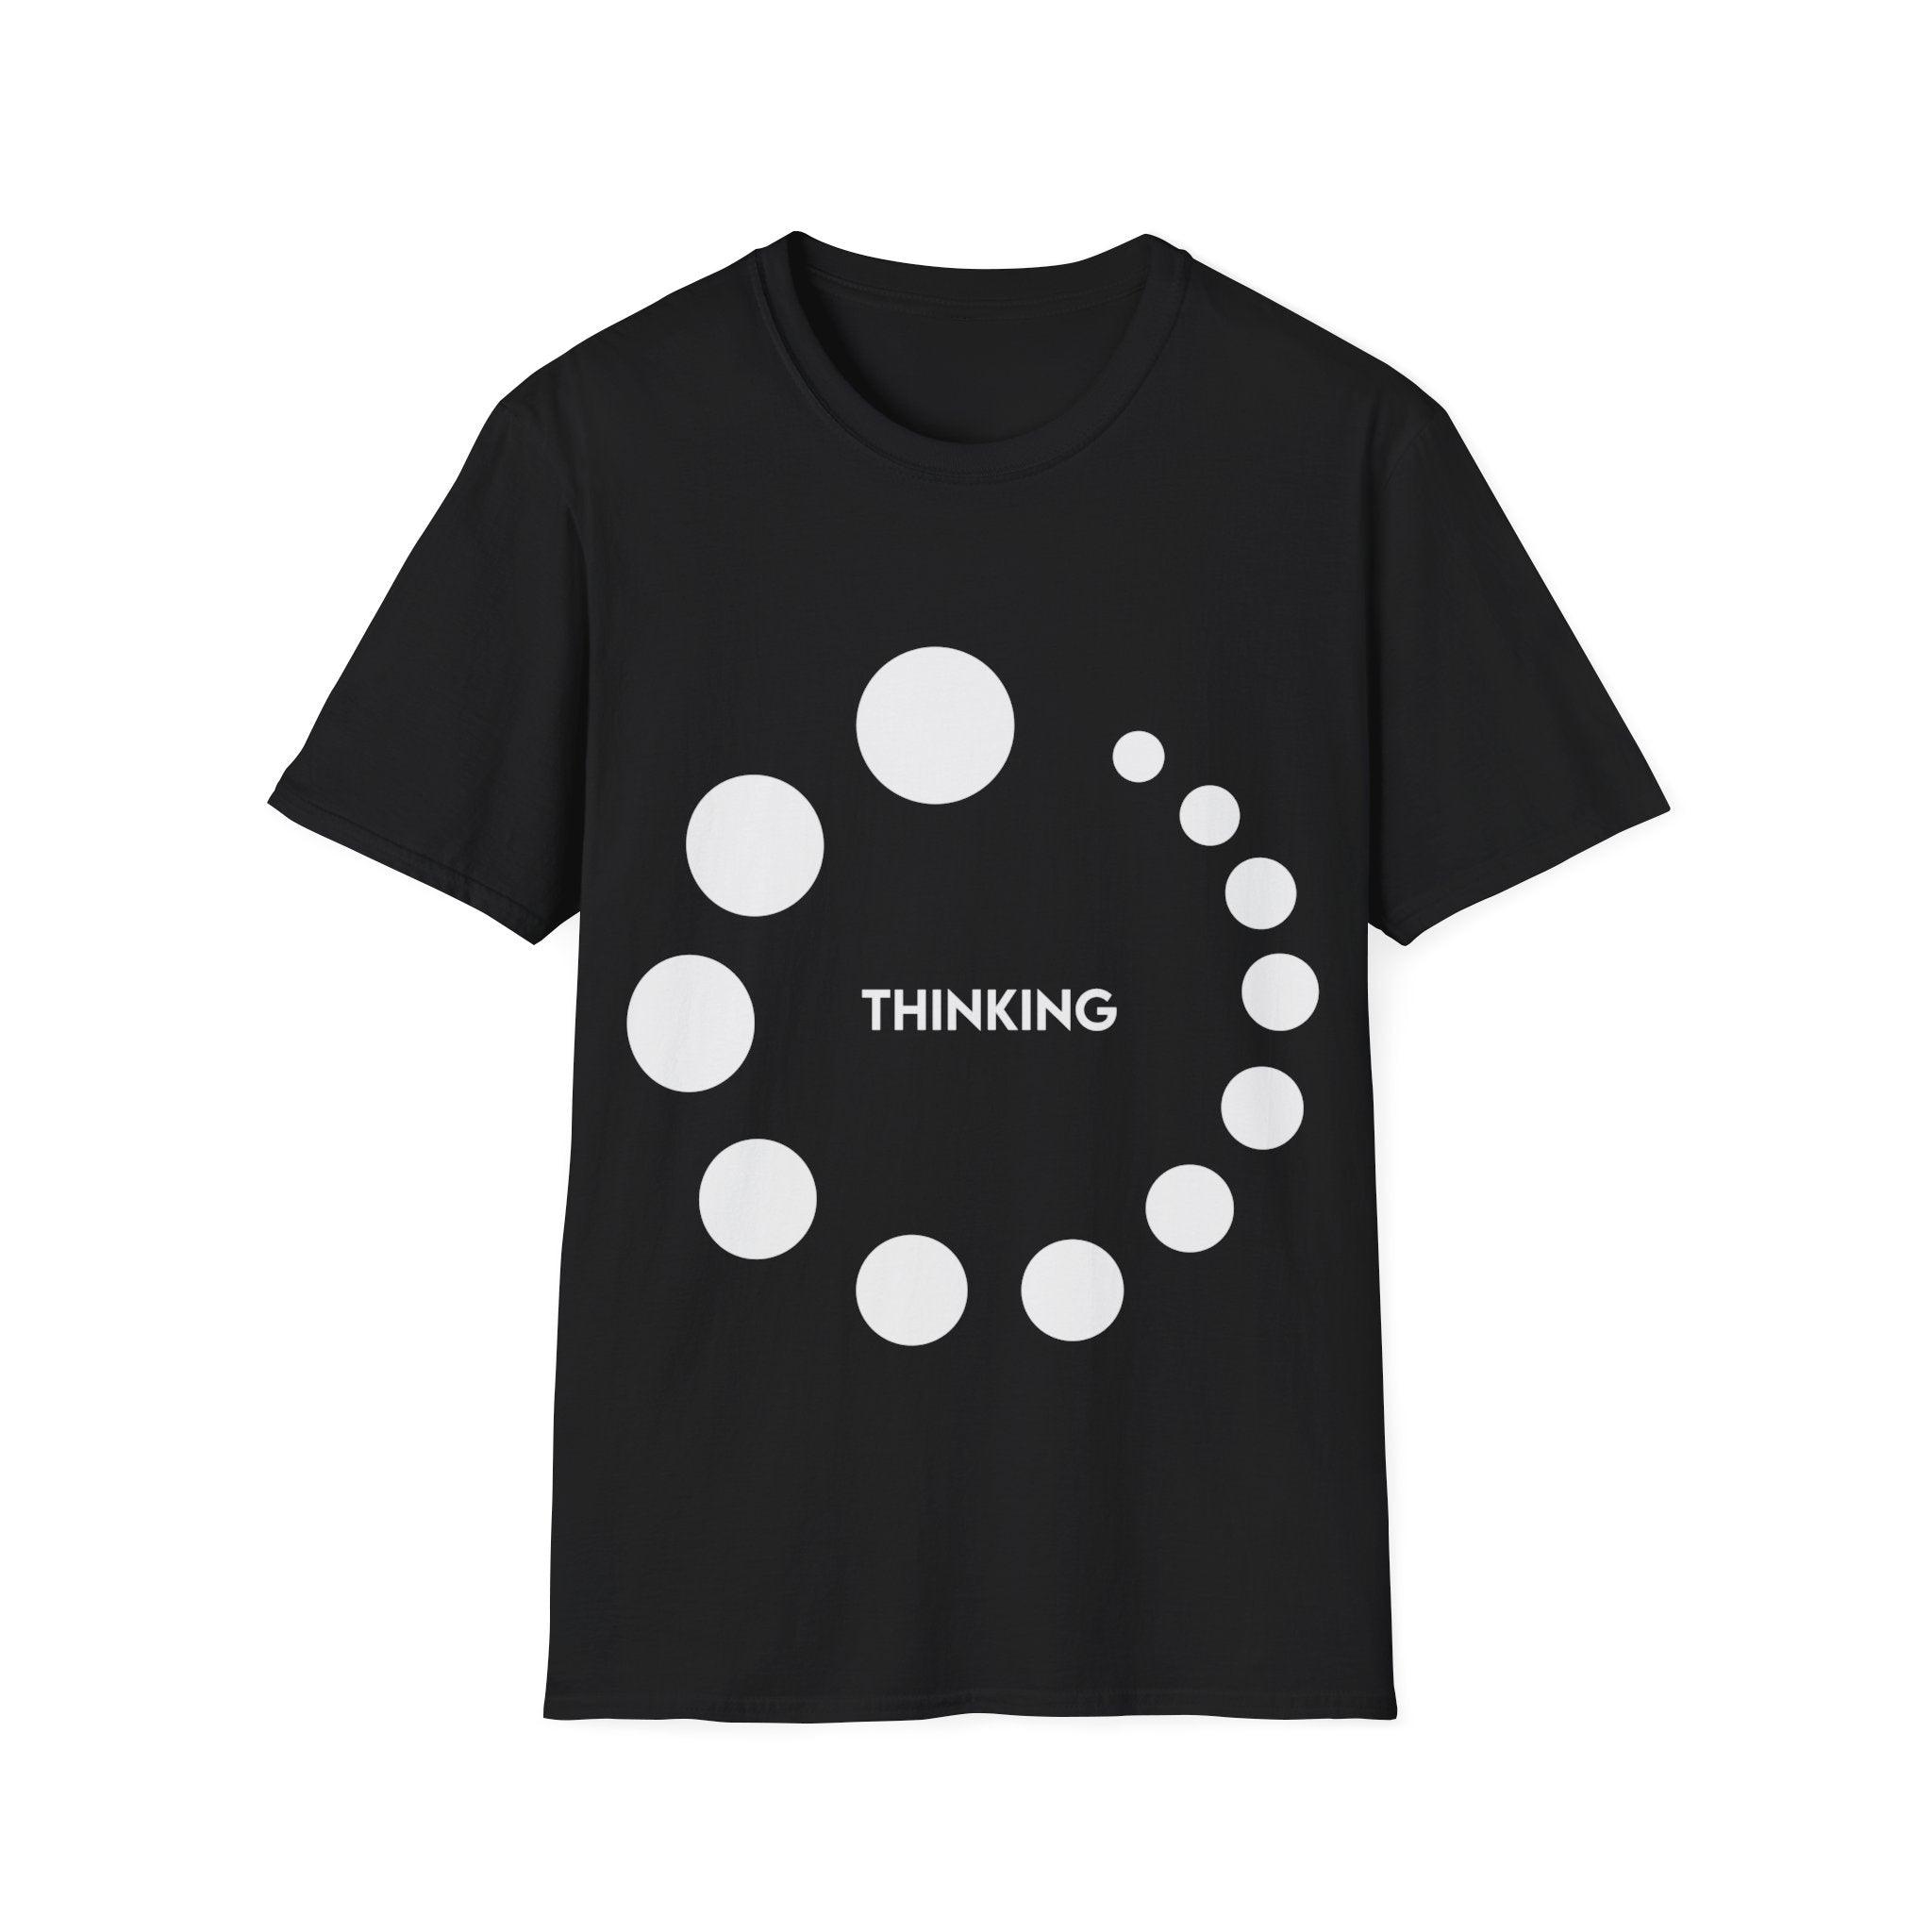 Thinking or Overthinking Unisex Softstyle T-Shirt Crew neck, DTG, Men's Clothing, Regular fit, T-shirts - plusminusco.com